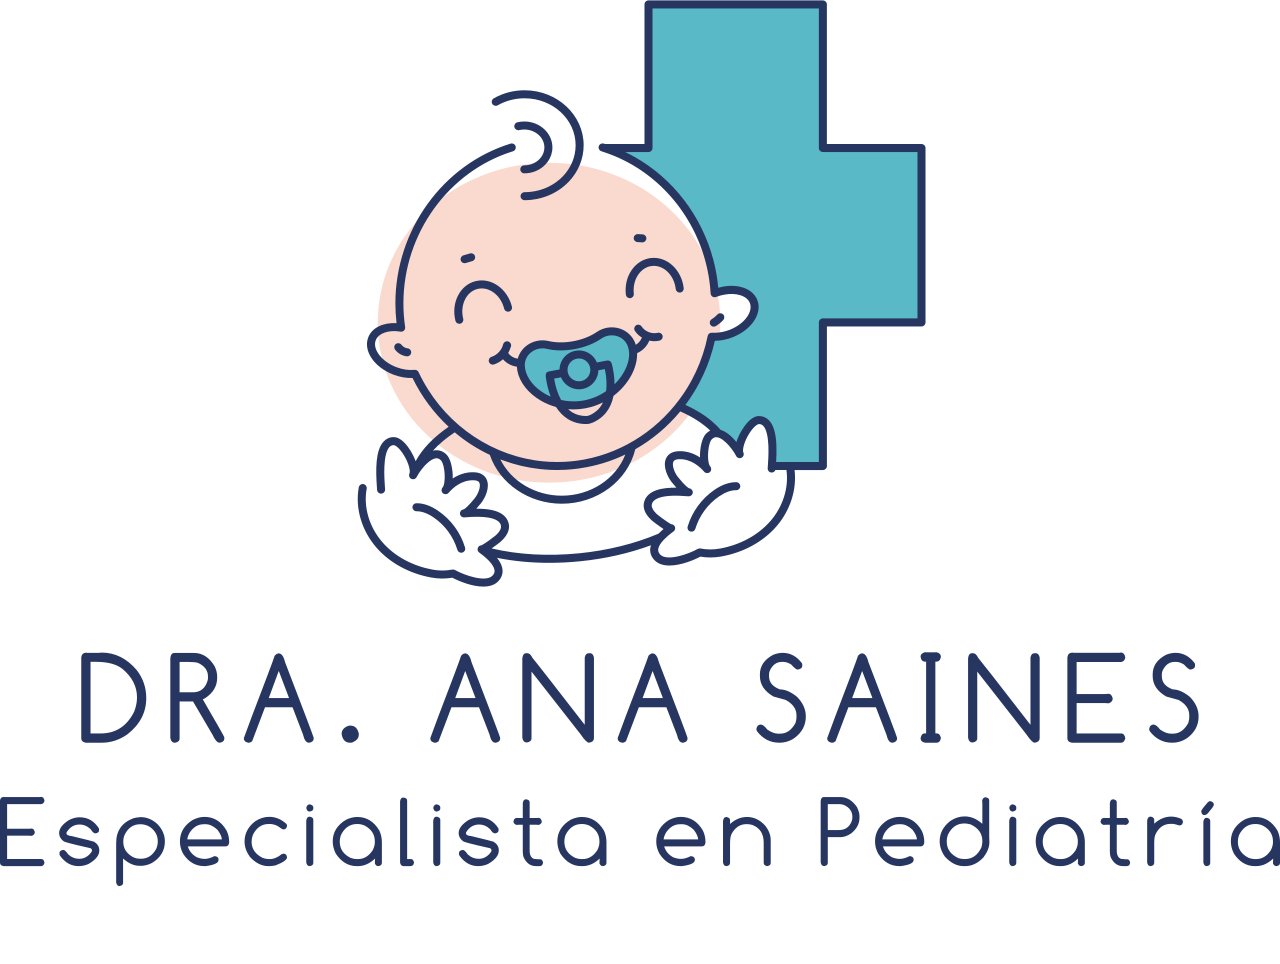 Pediatra Ana Saines Salvatierra's web page